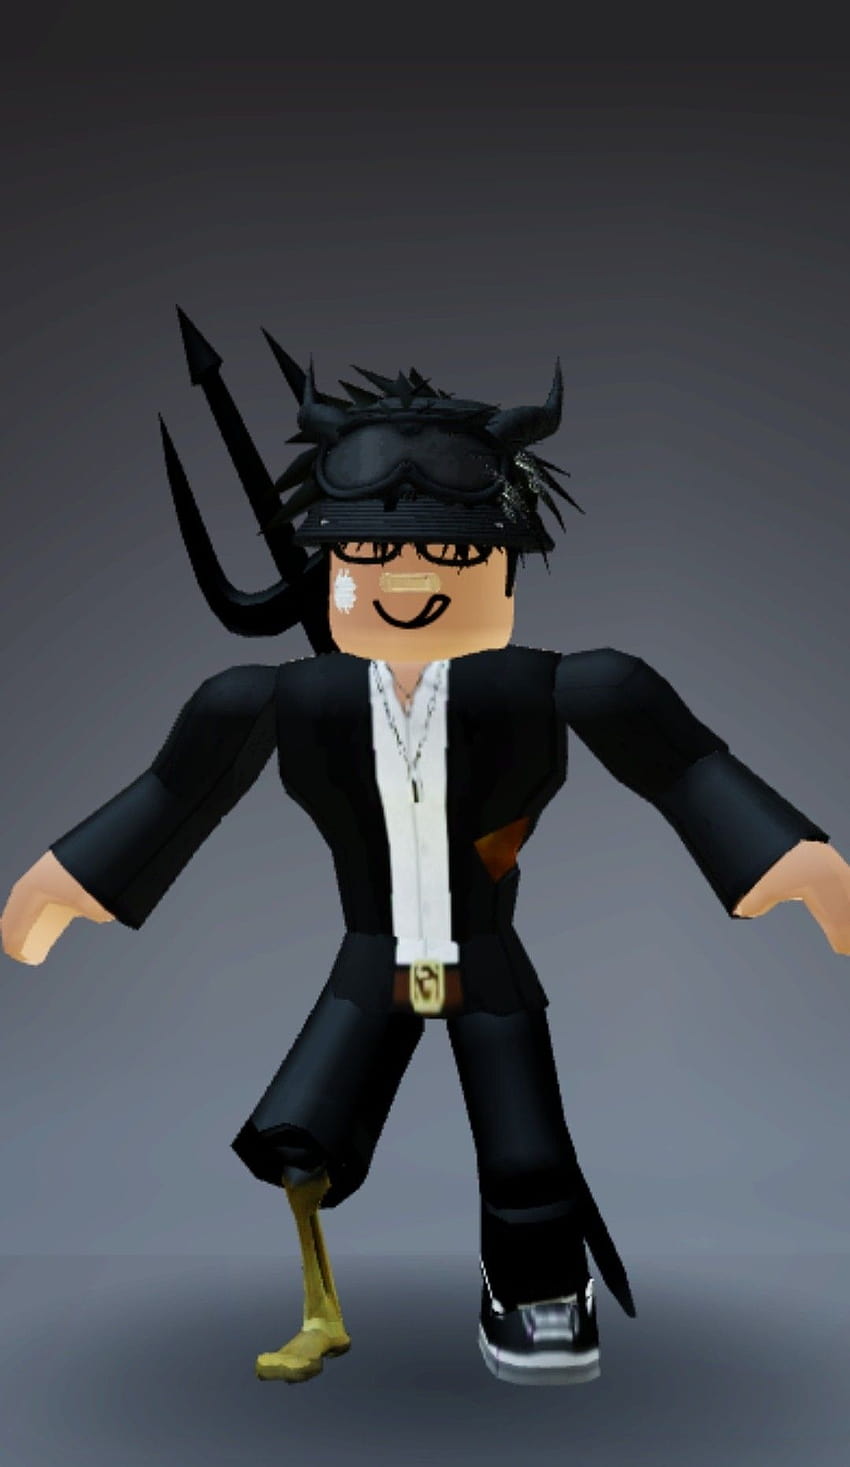 Roblox Black Boy - một Avatar phong cách với màu sắc đen tuyền, khiến người chơi trở thành tâm điểm của game. Với số tiền tốn ít, bạn sẽ sở hữu một Avatar độc đáo và cá tính.